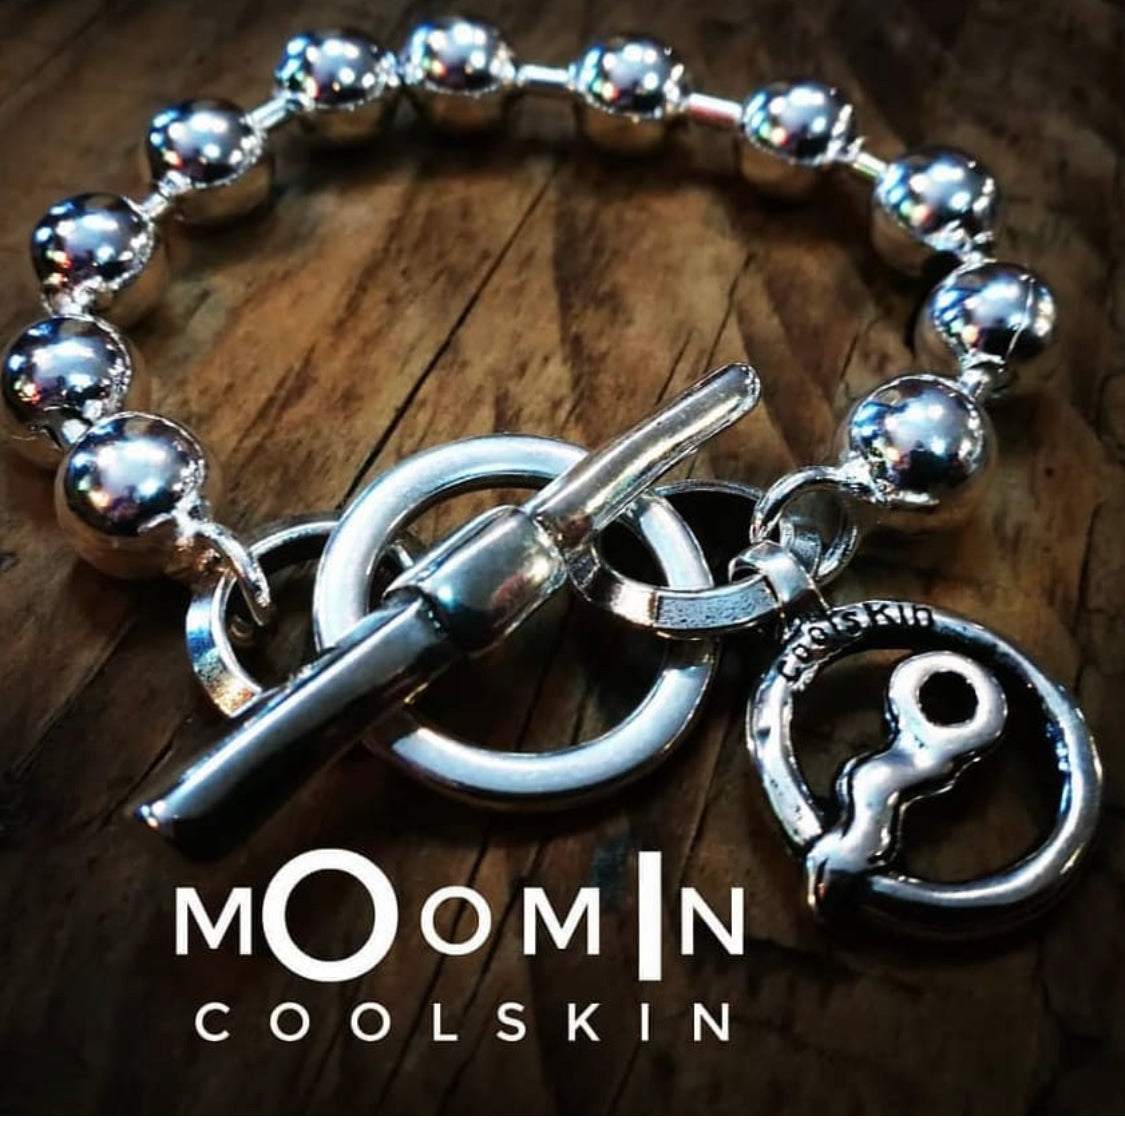 Coolskin- Colección Moomin